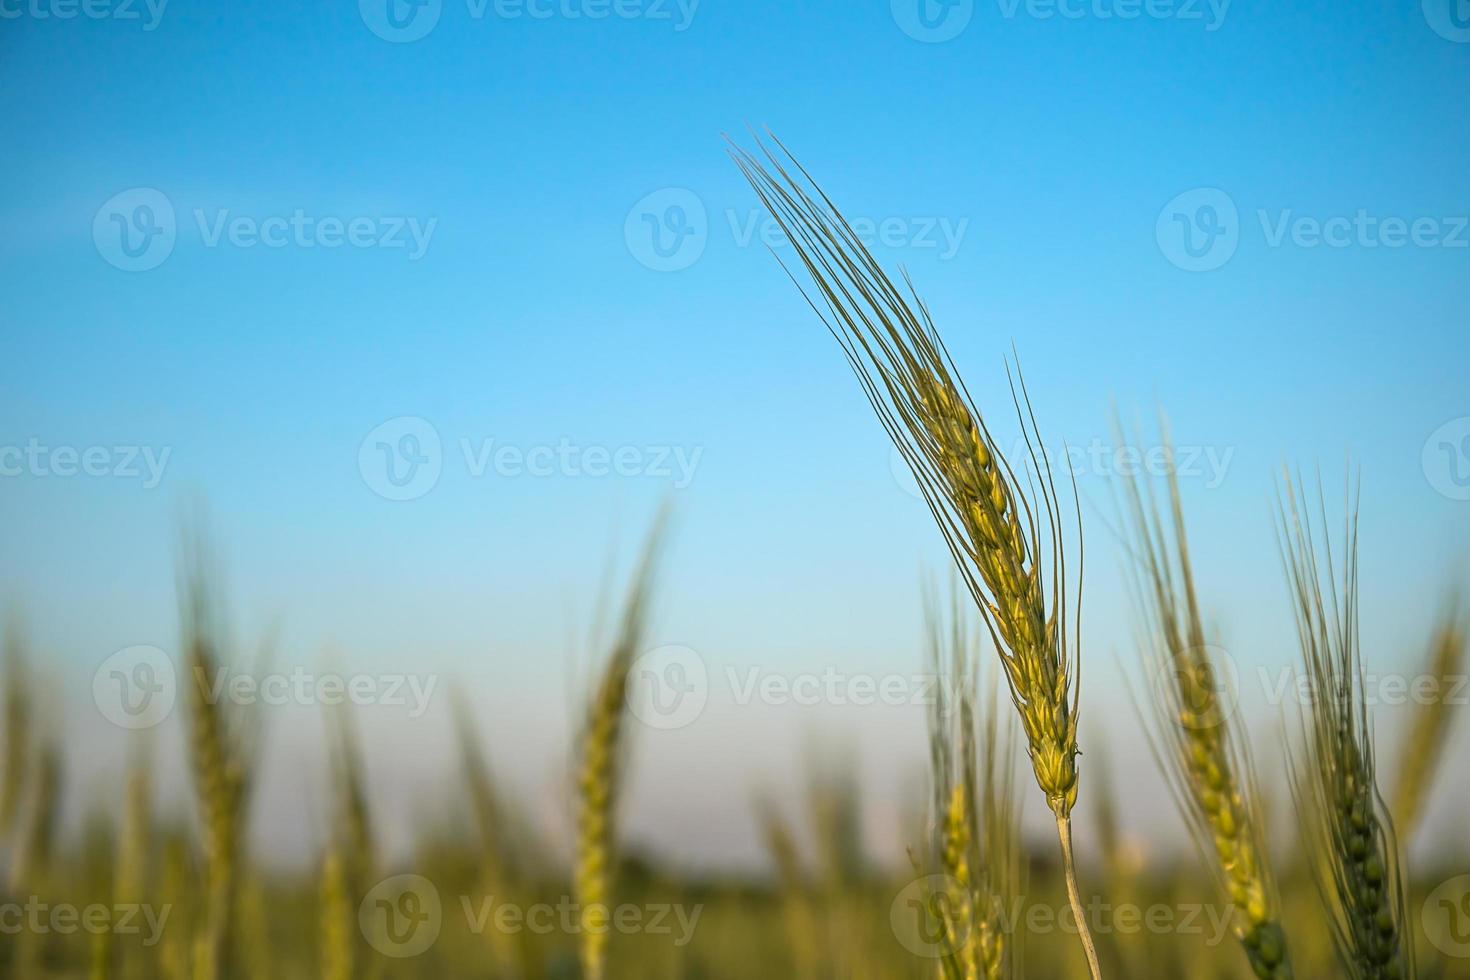 bild av korn liktornar växande i en fält foto